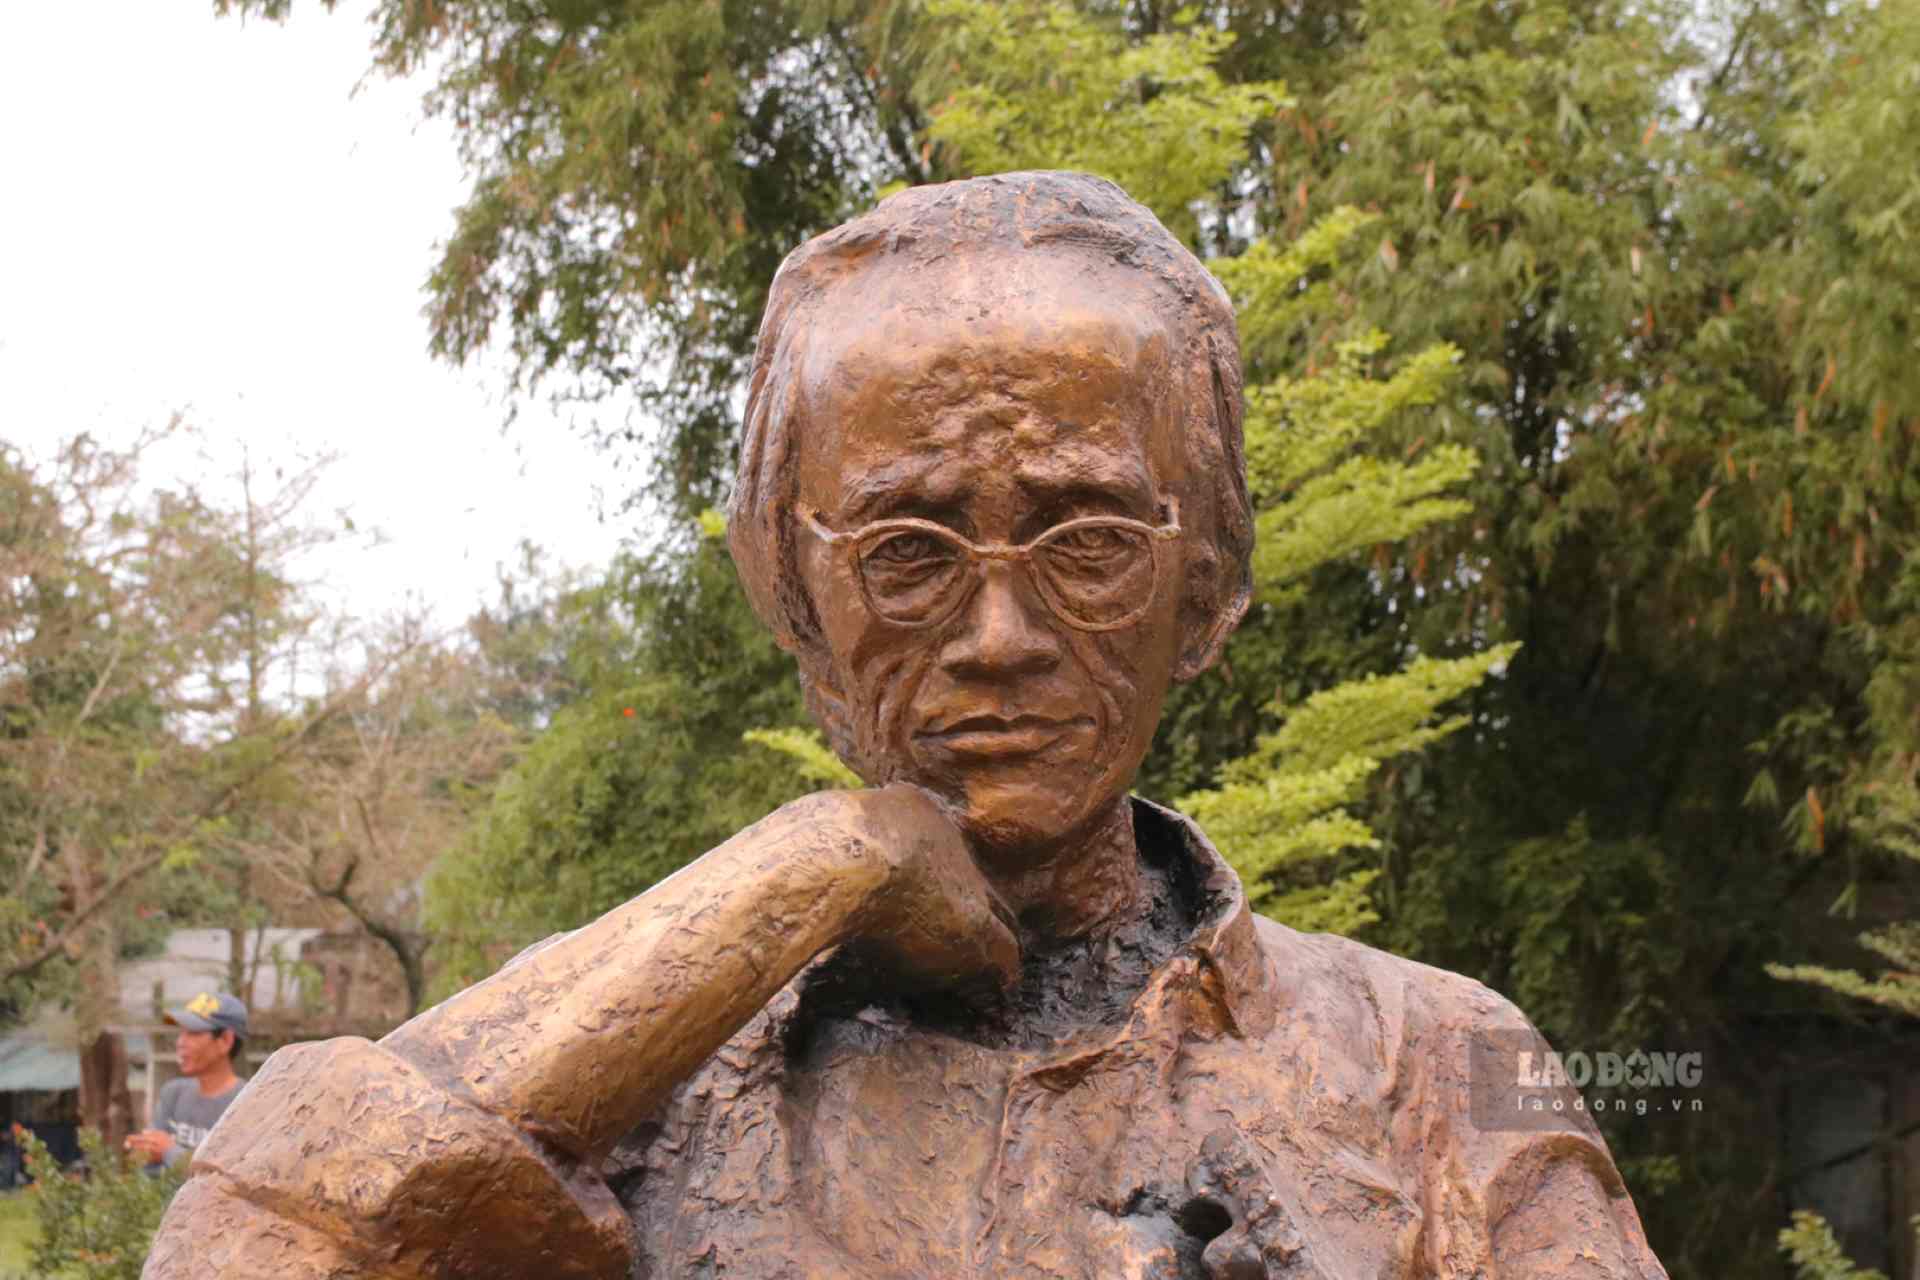 Bức tượng được đặt ở công viên cùng tên với nhạc sĩ Trịnh Công Sơn ở TP. Huế với hy vọng để người mến mộ có thể dừng chân ngắm, tìm hiểu về cuộc đời, sự nghiệp của người nhạc sĩ tài hoa.